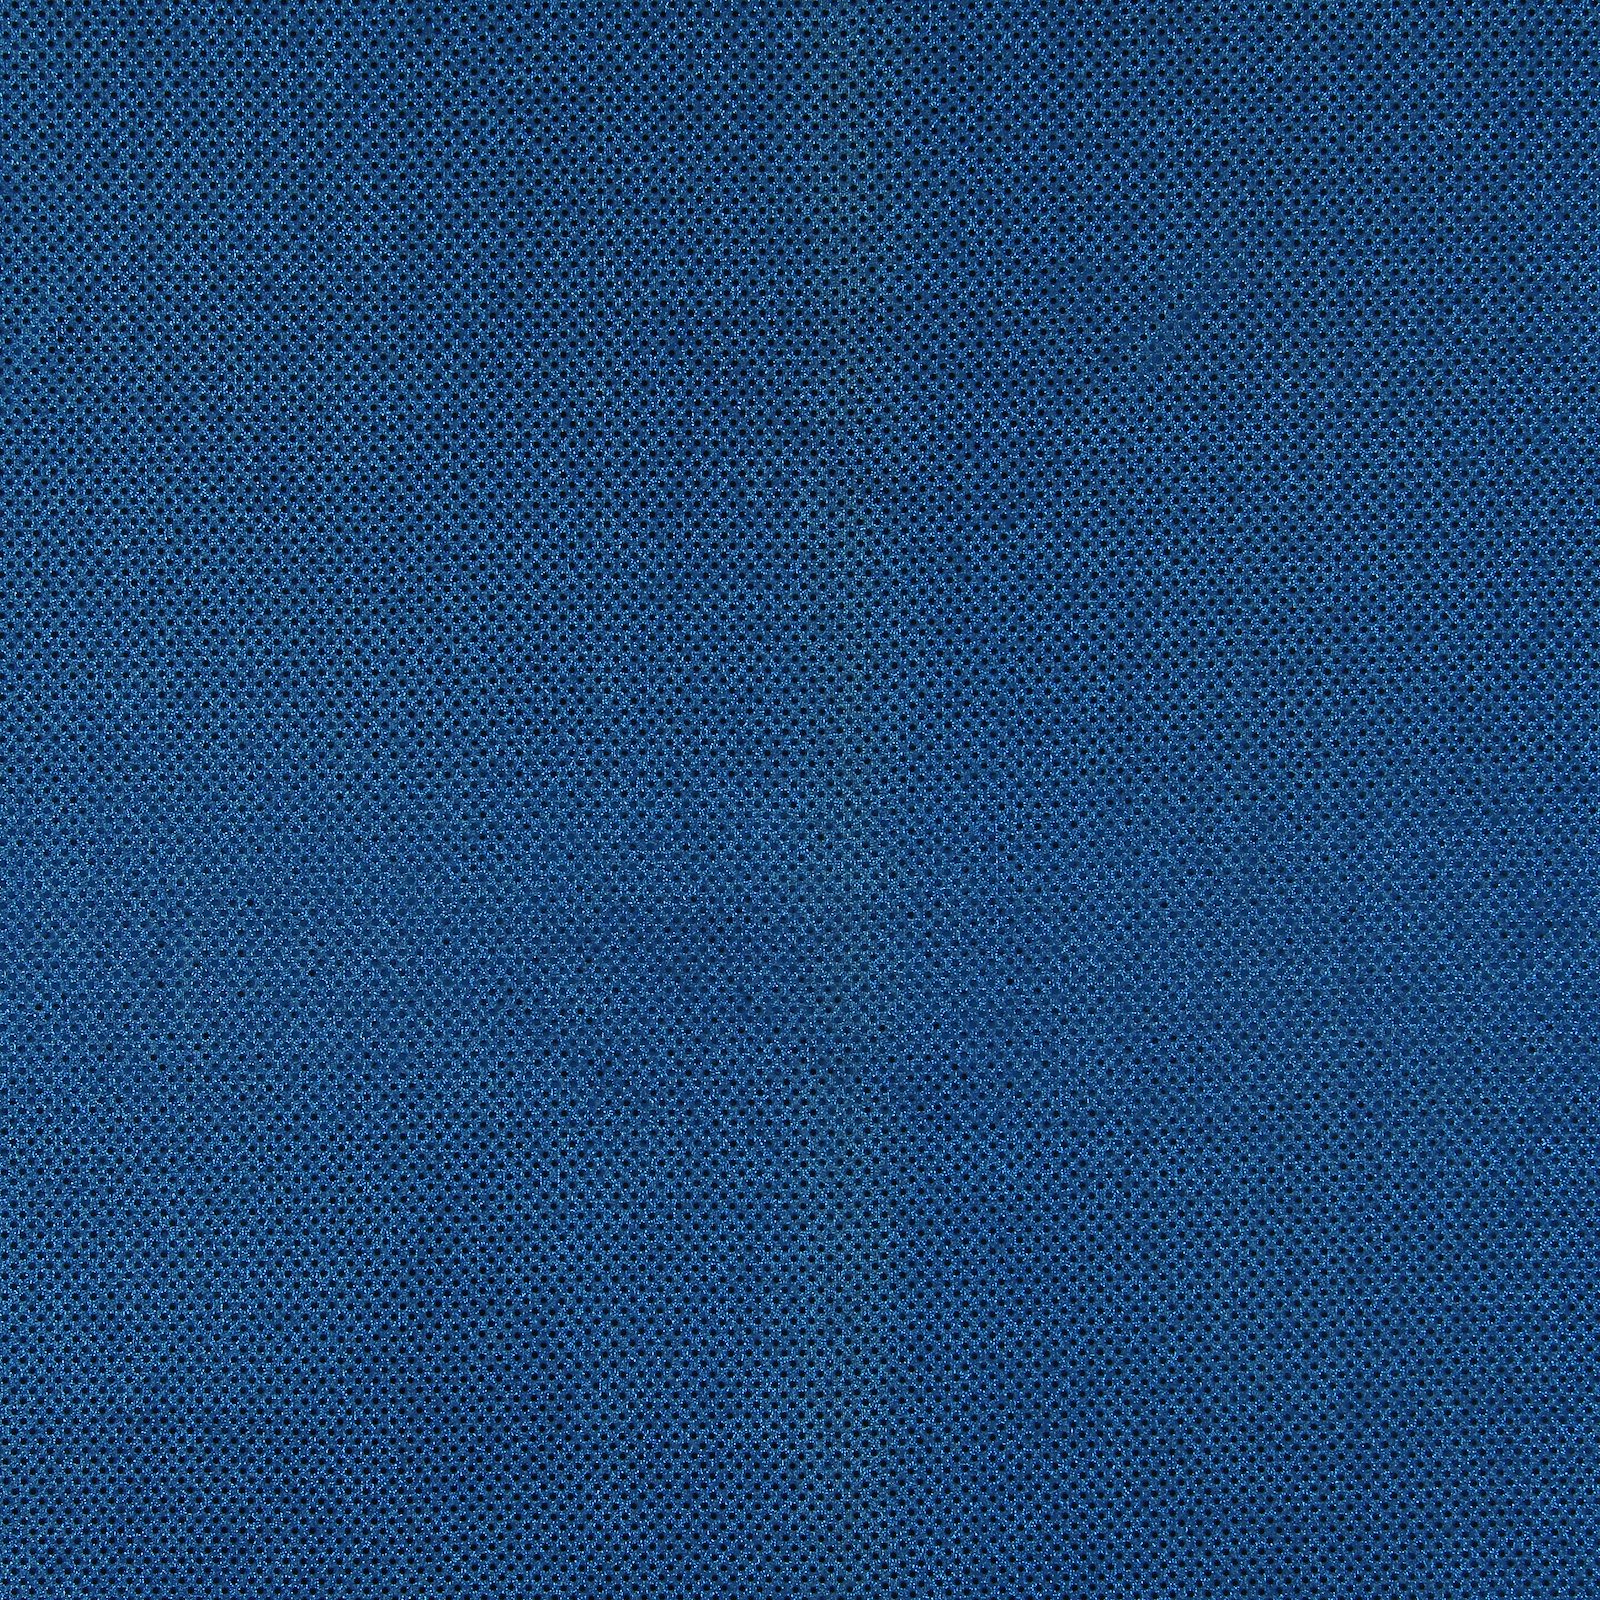 Knit with foil sequins cobalt blue 3mm 200259_pack_solid